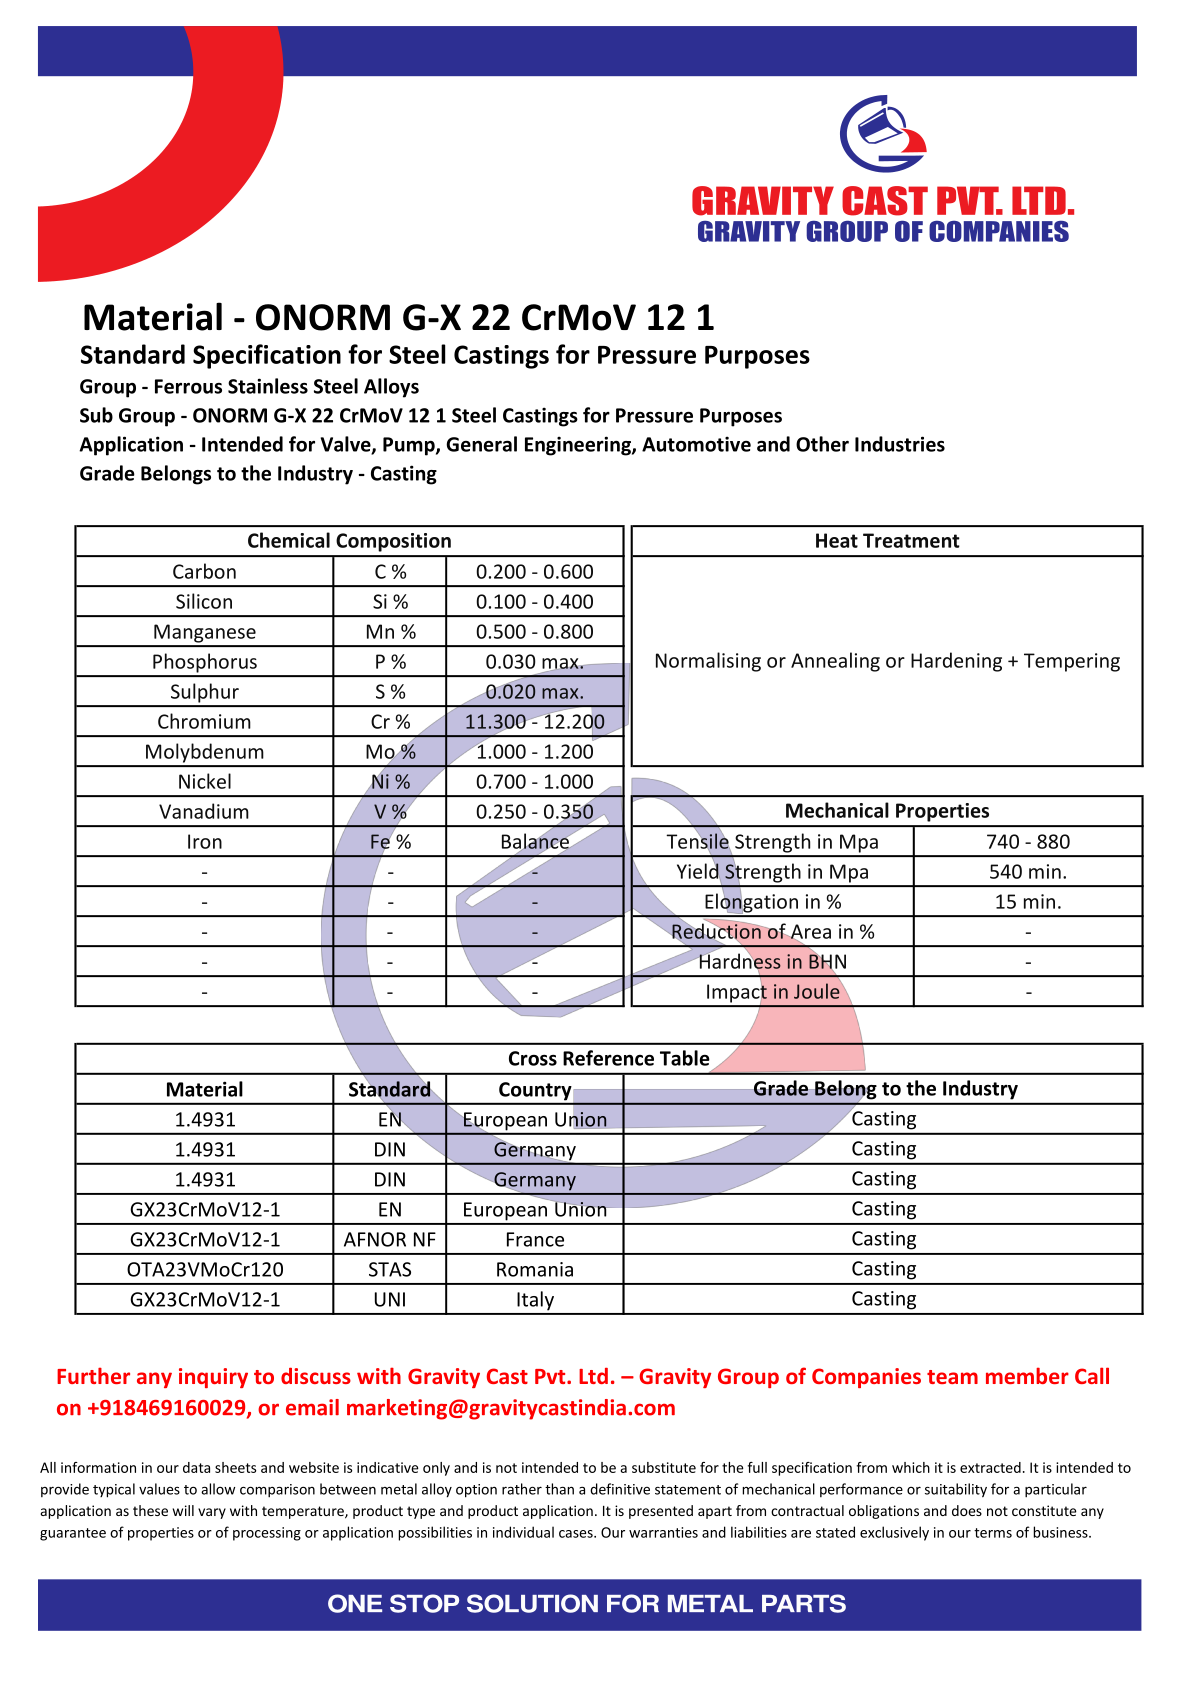 ONORM G-X 22 CrMoV 12 1.pdf